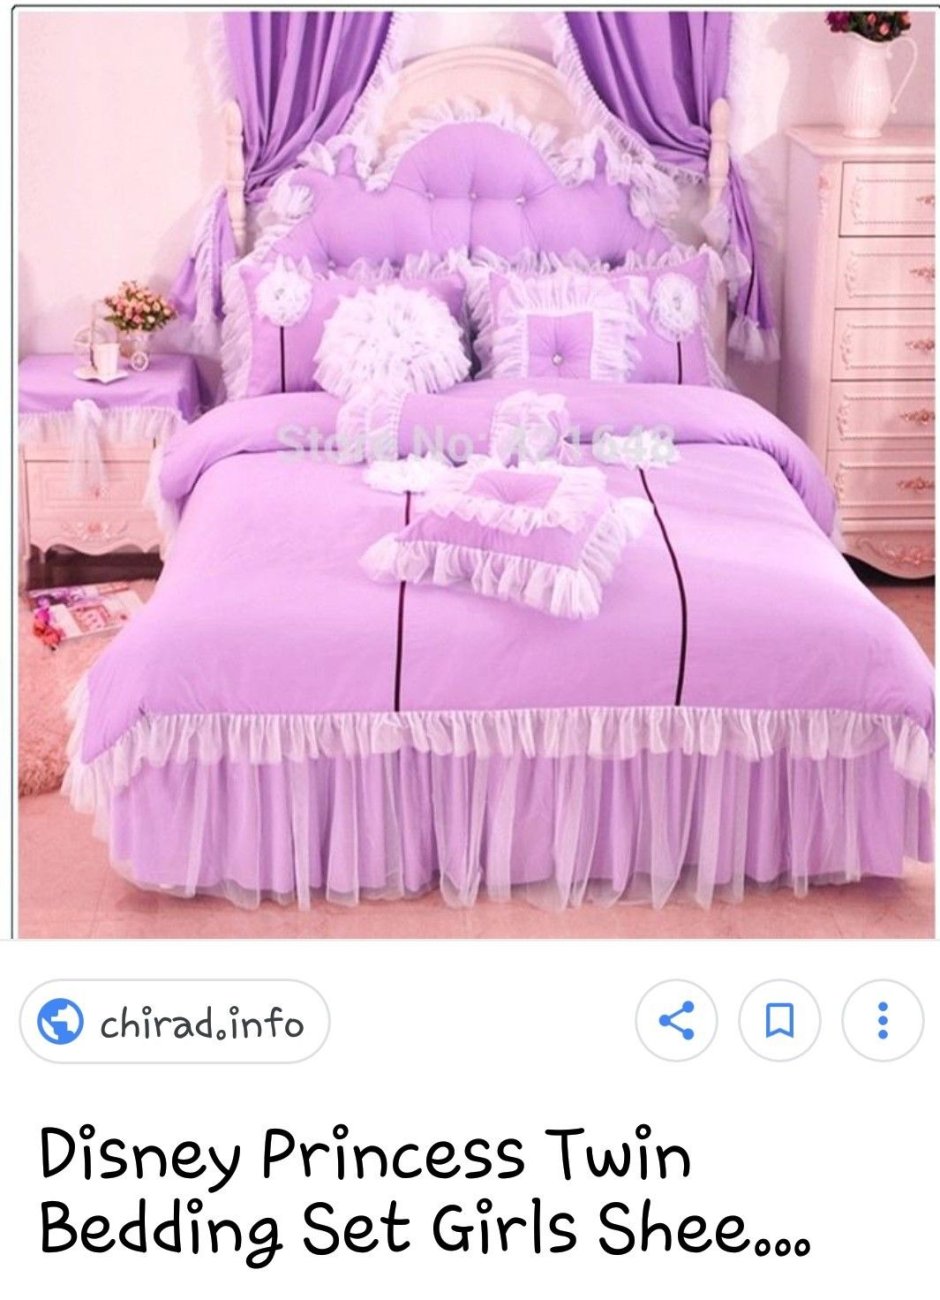 Красивые кровати для девочек